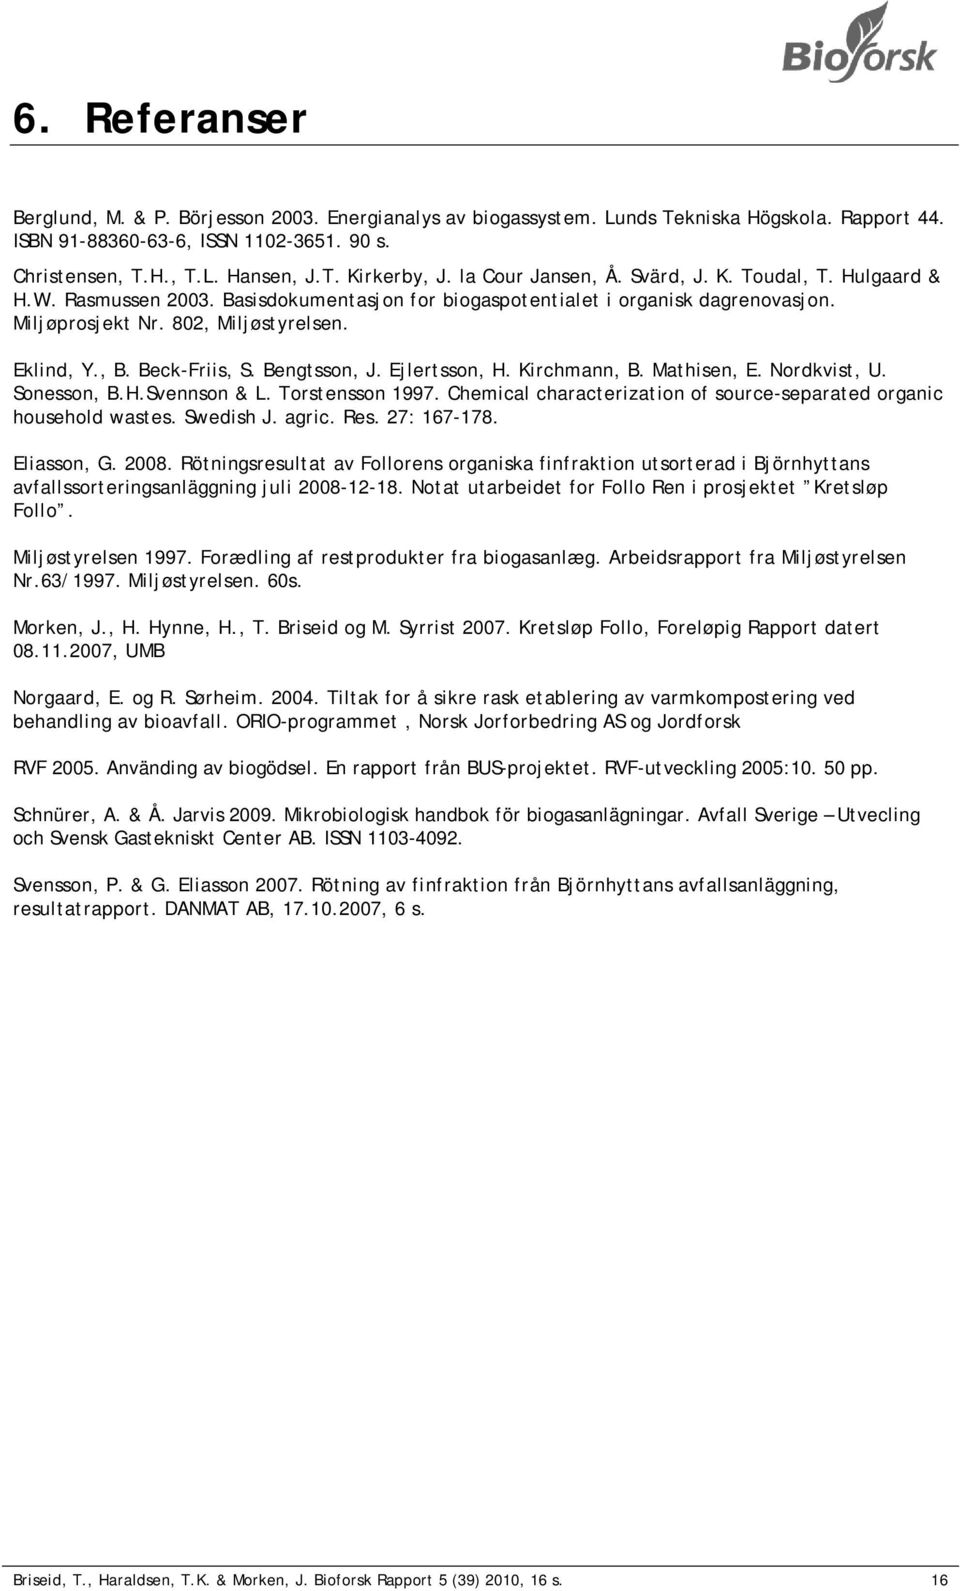 Beck-Friis, S. Bengtsson, J. Ejlertsson, H. Kirchmann, B. Mathisen, E. Nordkvist, U. Sonesson, B.H.Svennson & L. Torstensson 1997.